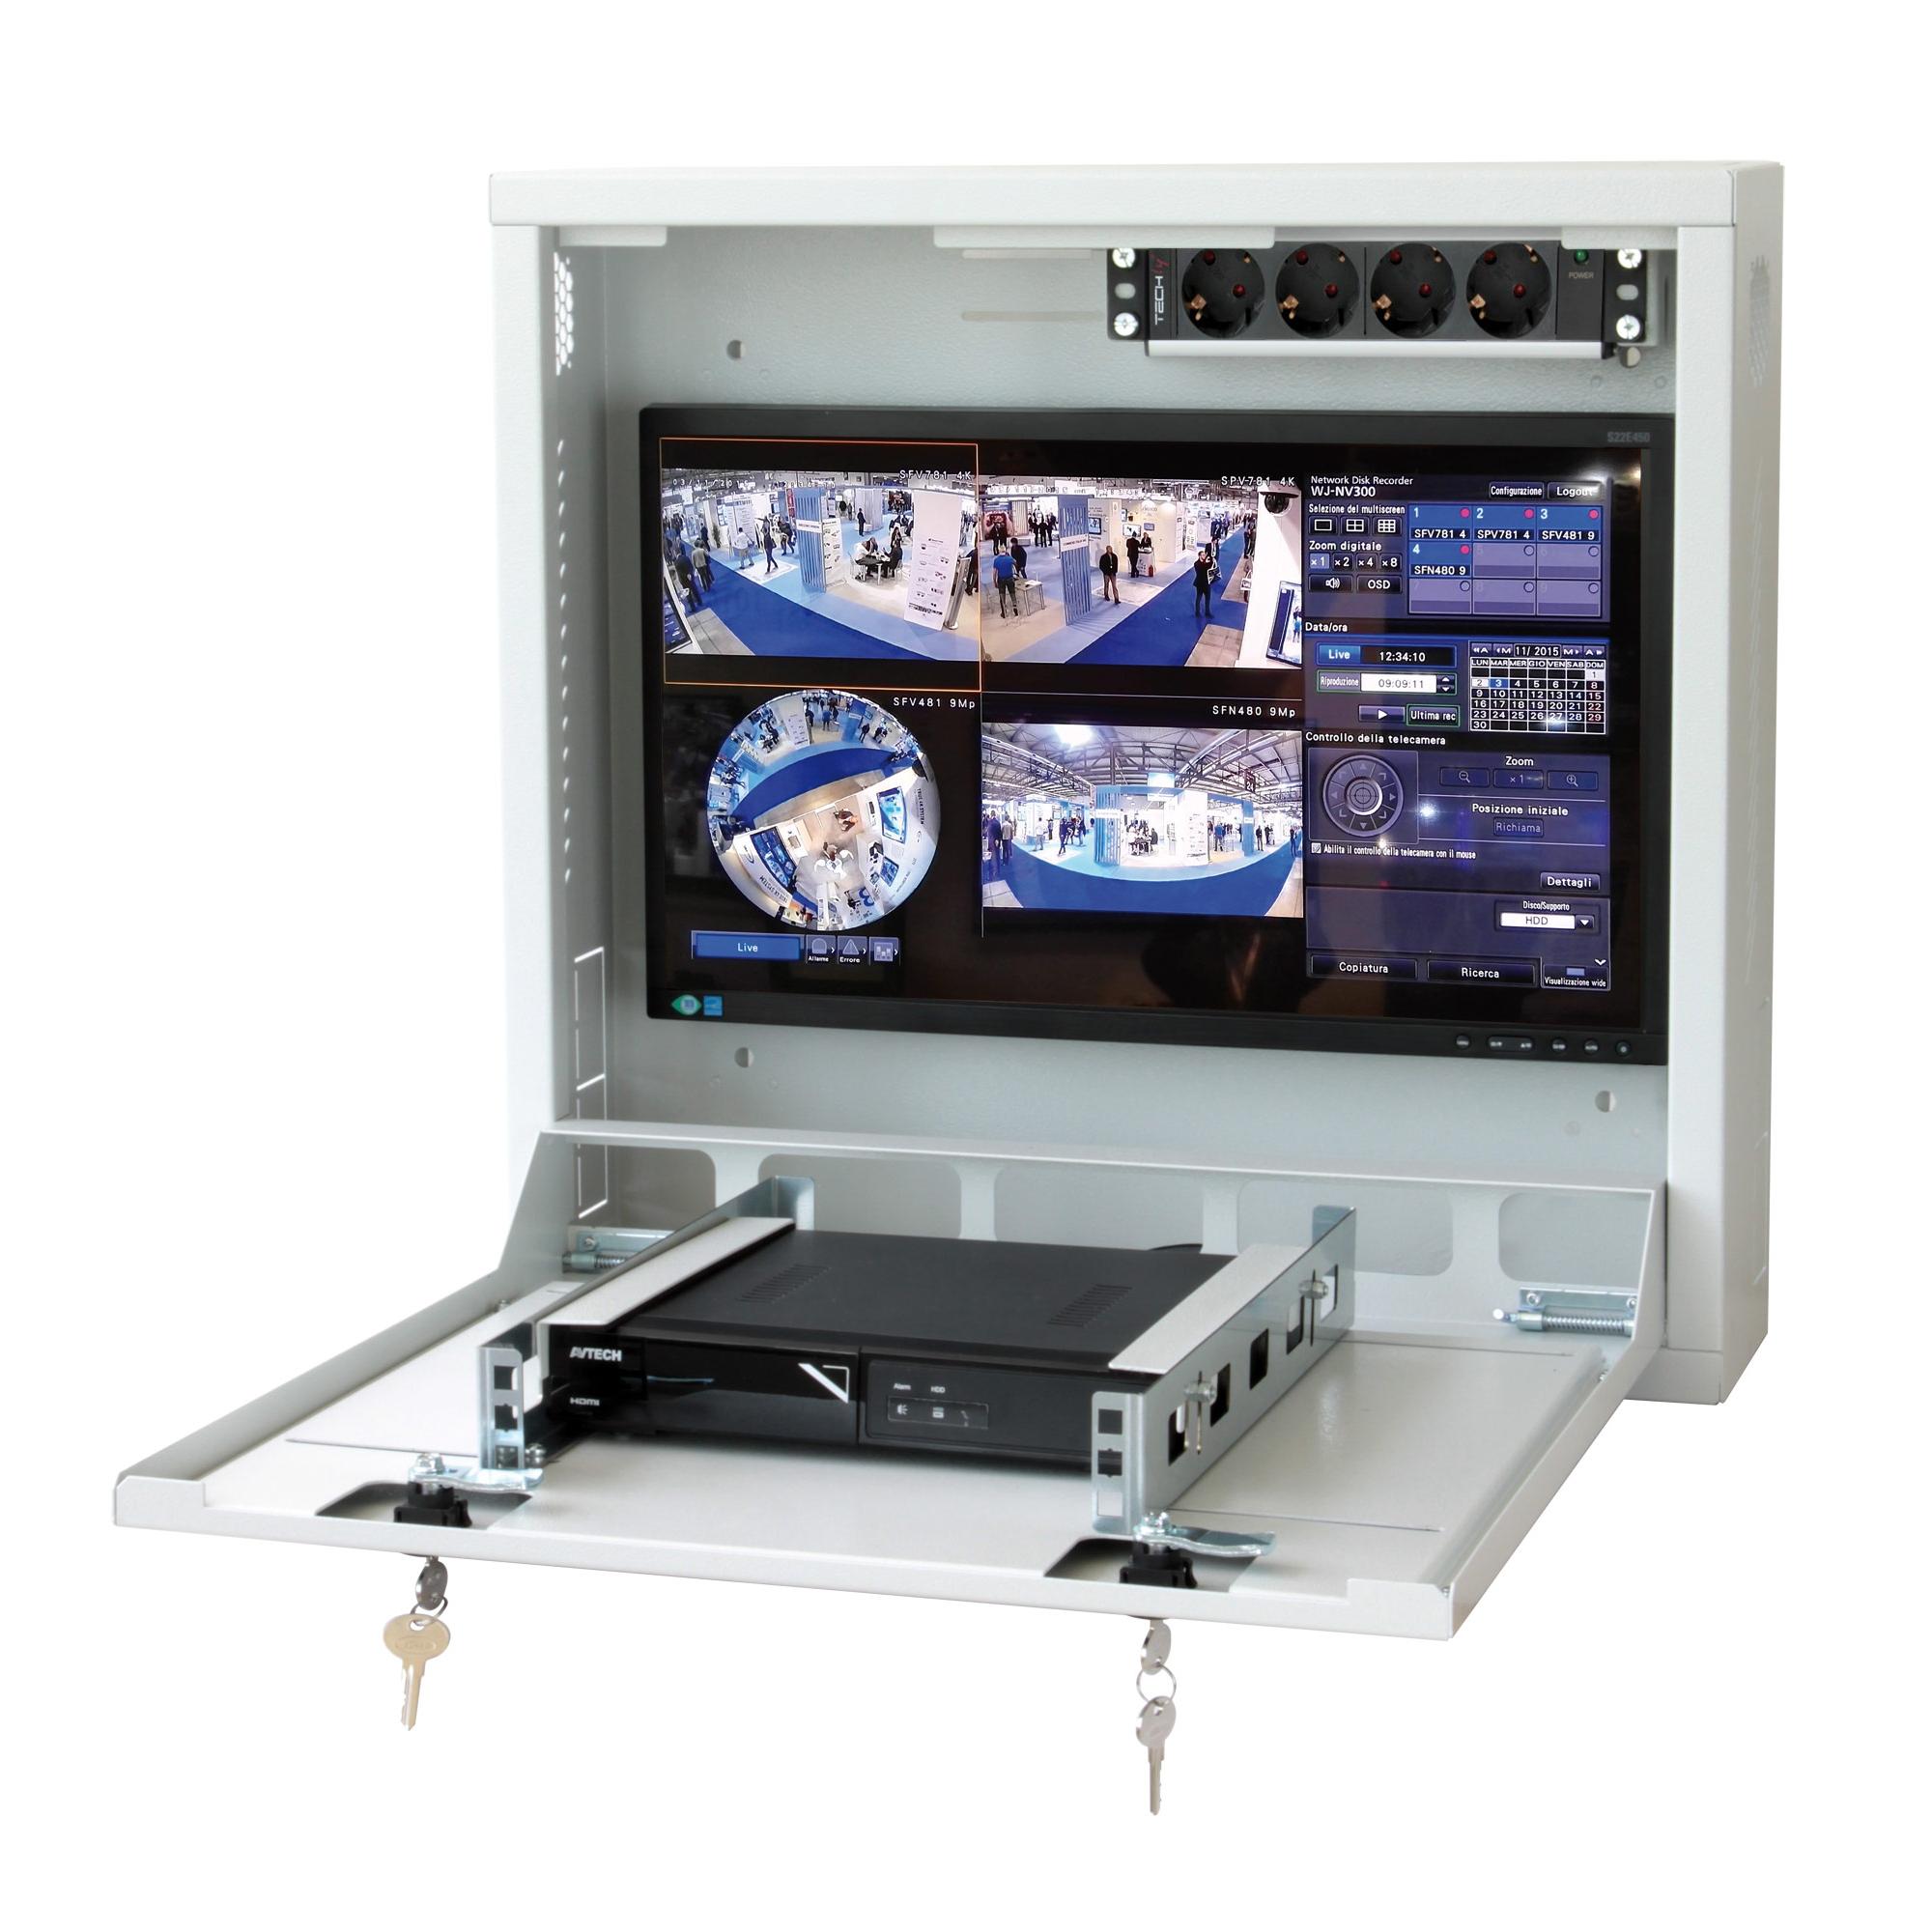 Box di sicurezza per DVR e sistemi di videosorveglianza Bianco RAL9016